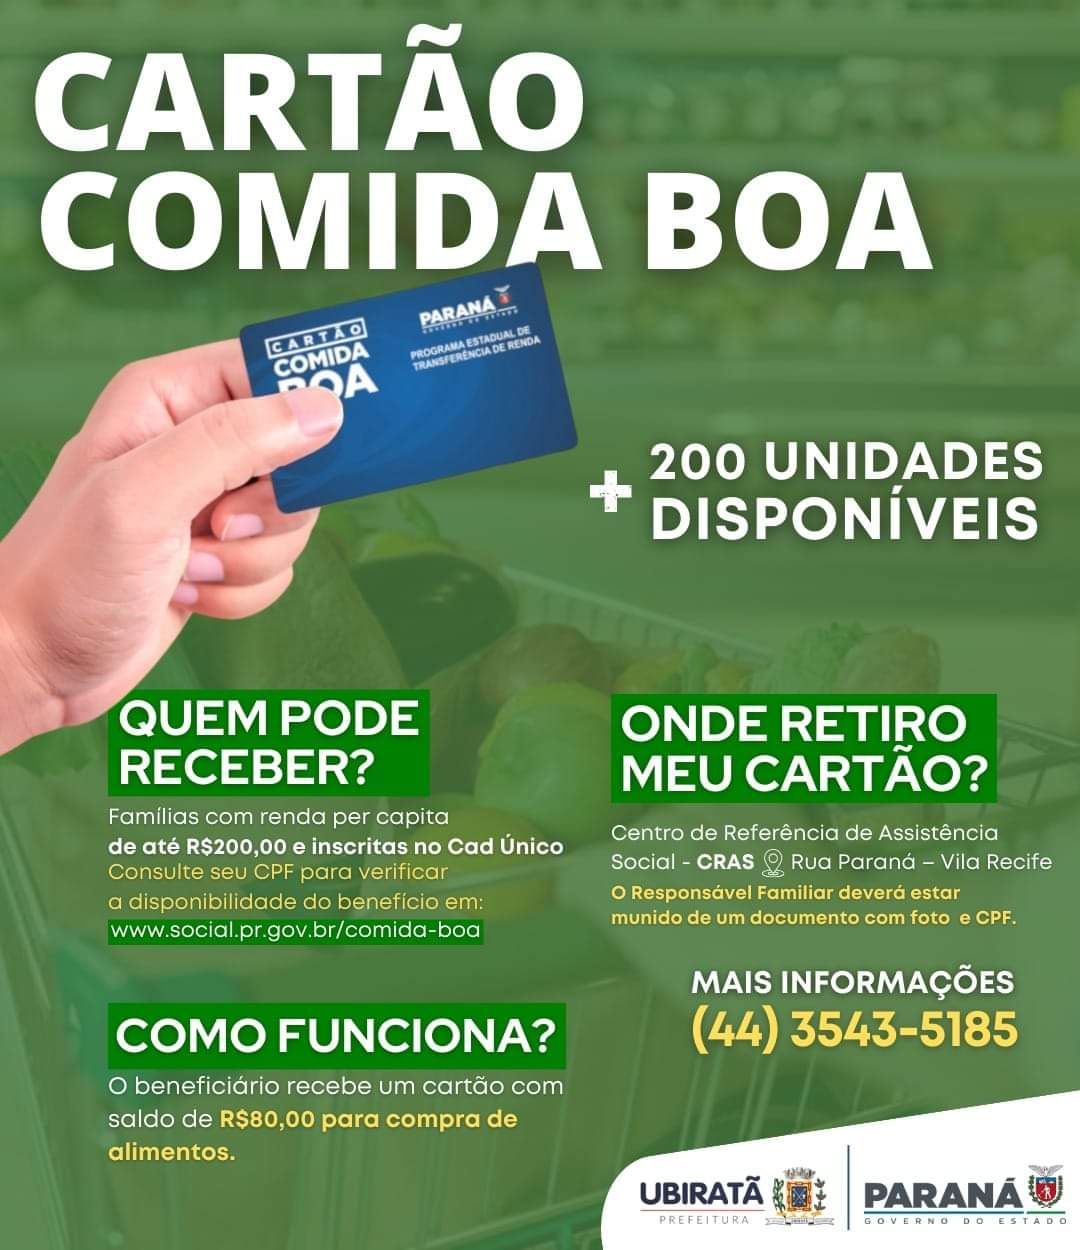 Ubiratã recebe novo lote de cartões COMIDA BOA